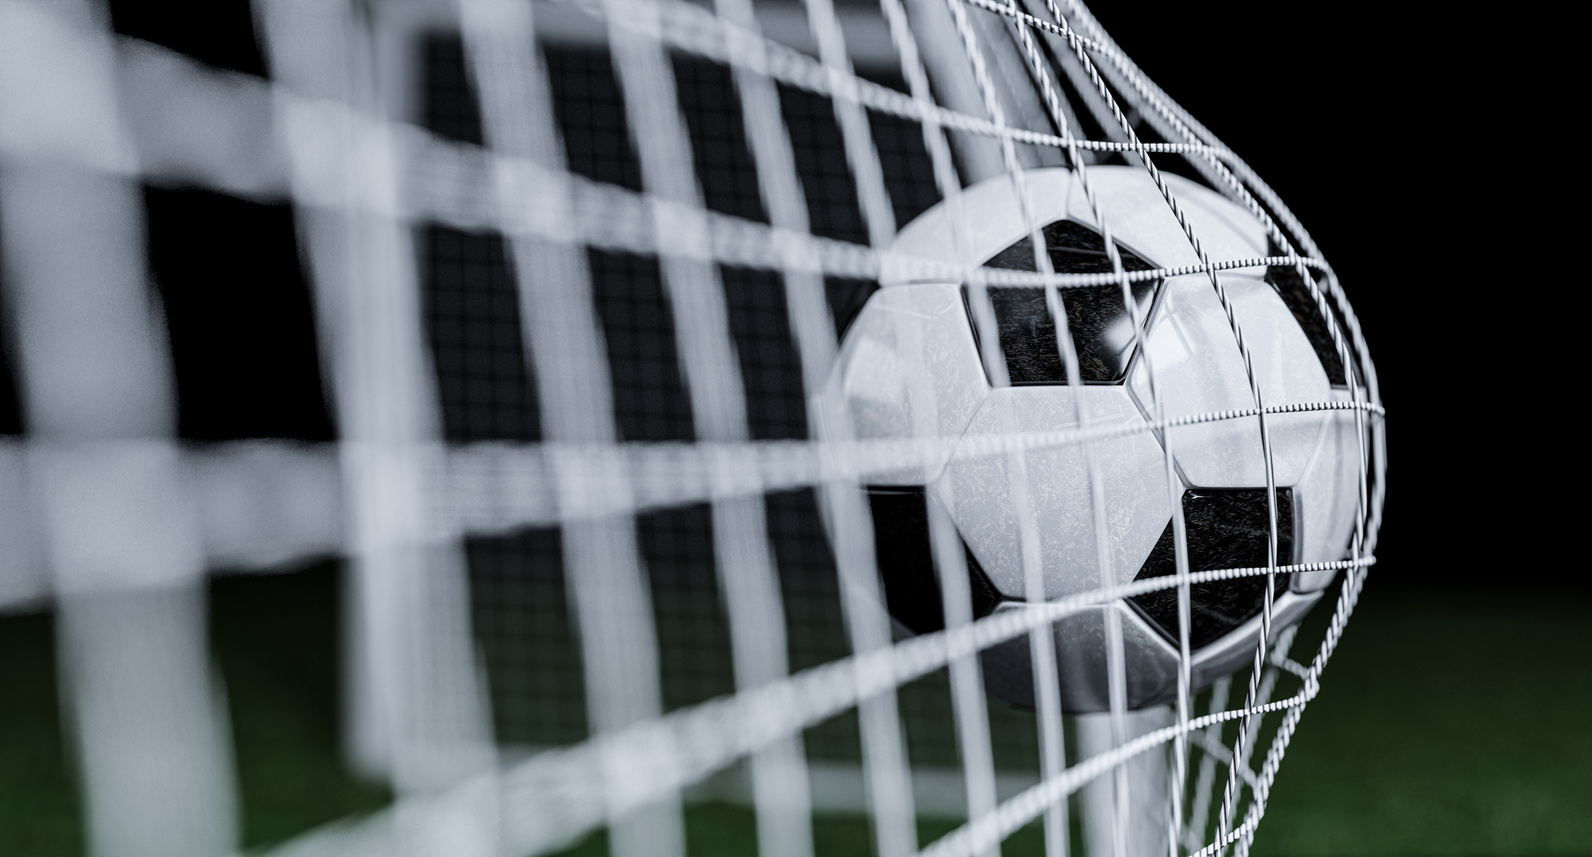 Goal in football - soccer ball in the net